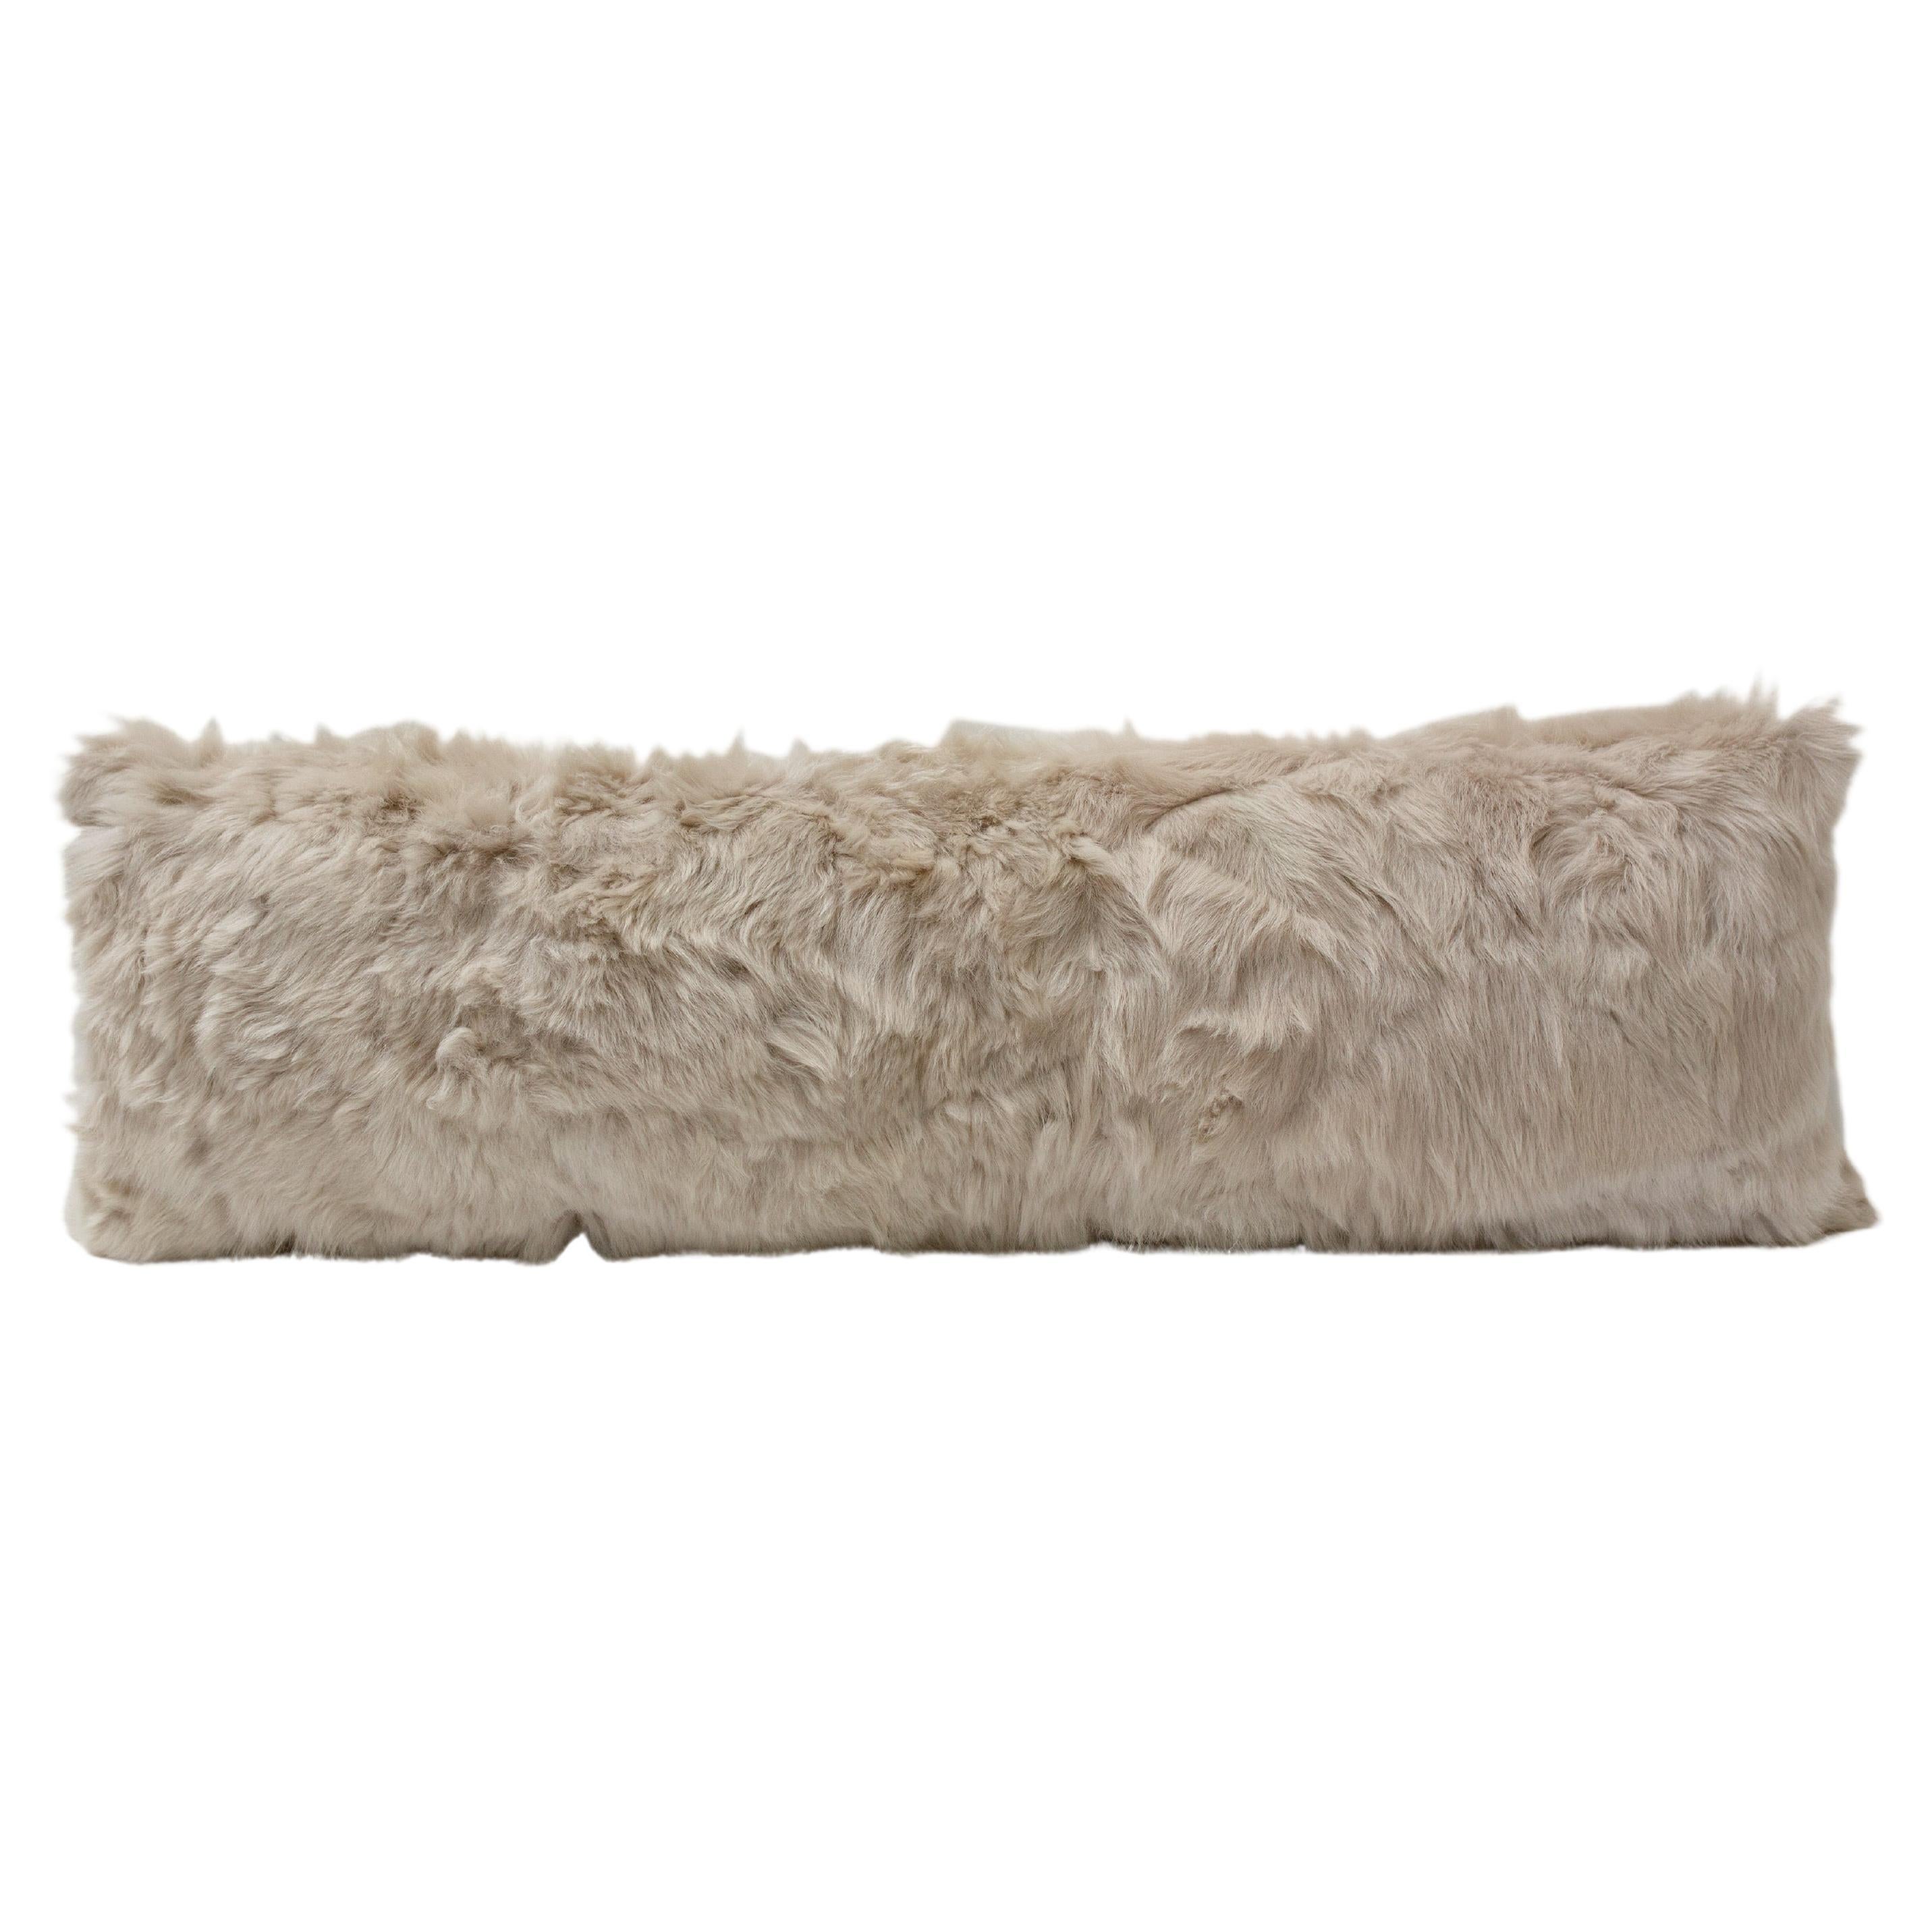 Real Fur Body Pillow in Bone by Jg Switzer